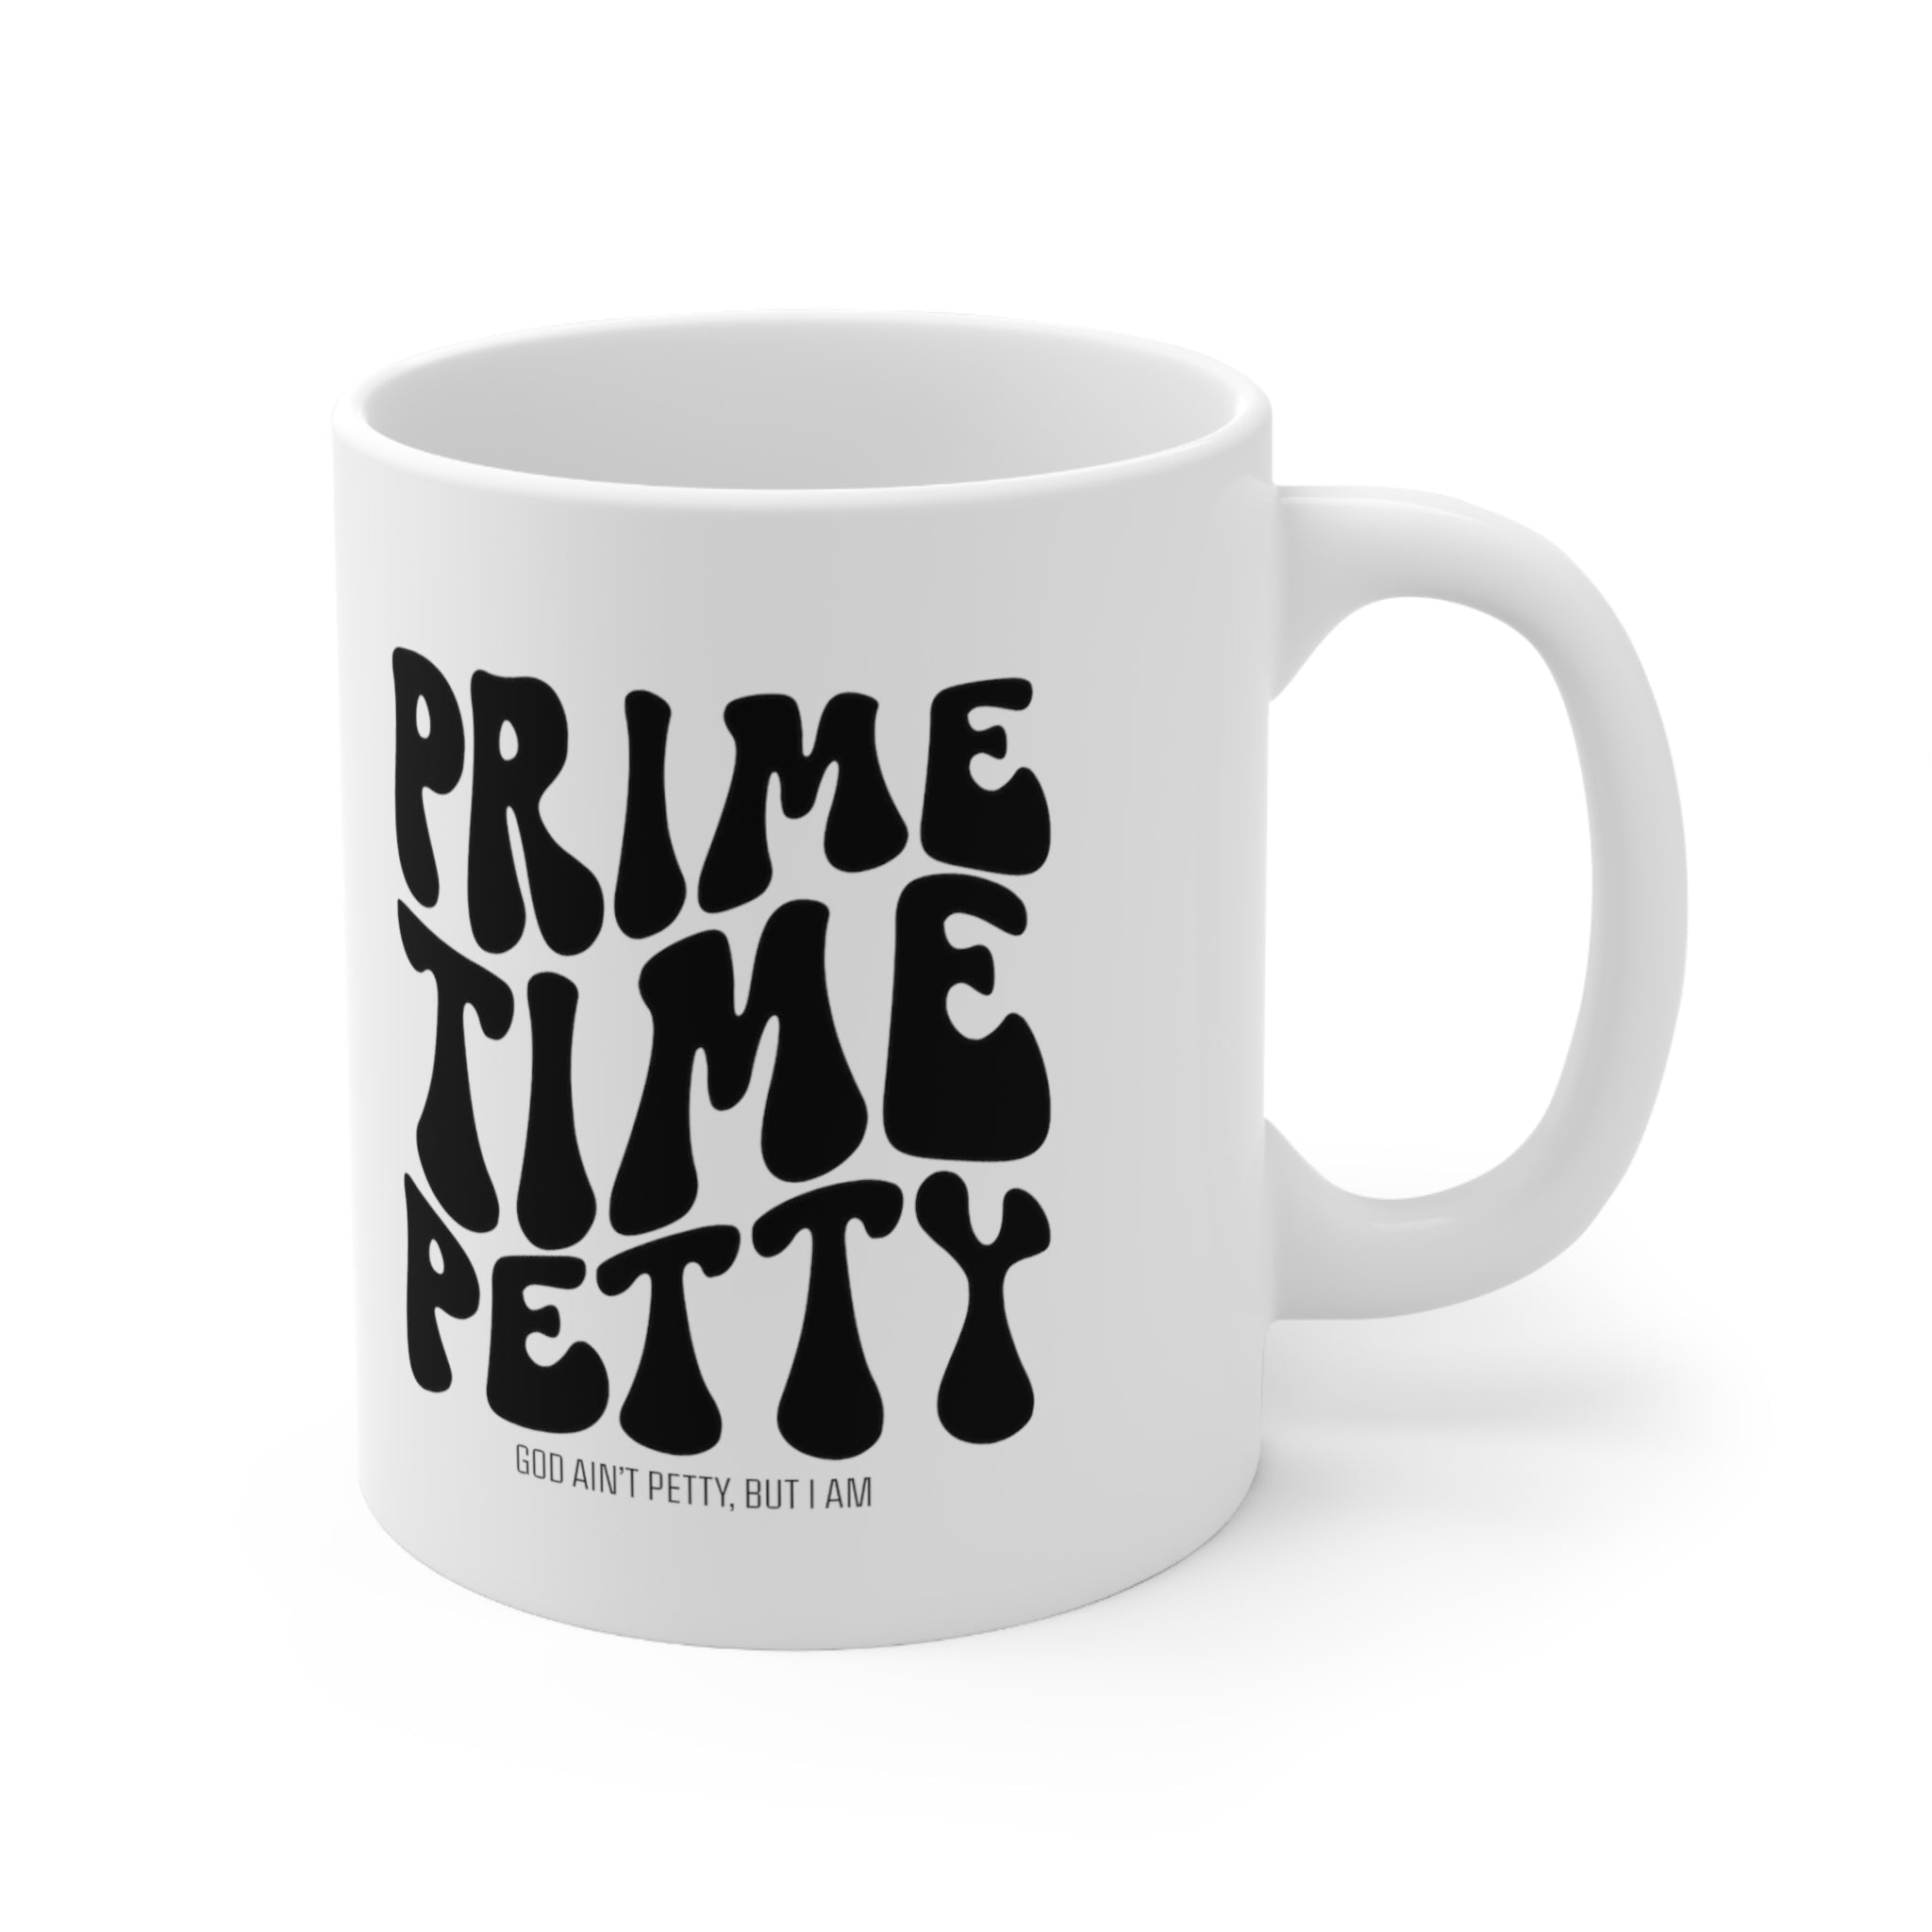 Prime Time Petty Retro Mug 11oz (White/Black)-Mug-The Original God Ain't Petty But I Am